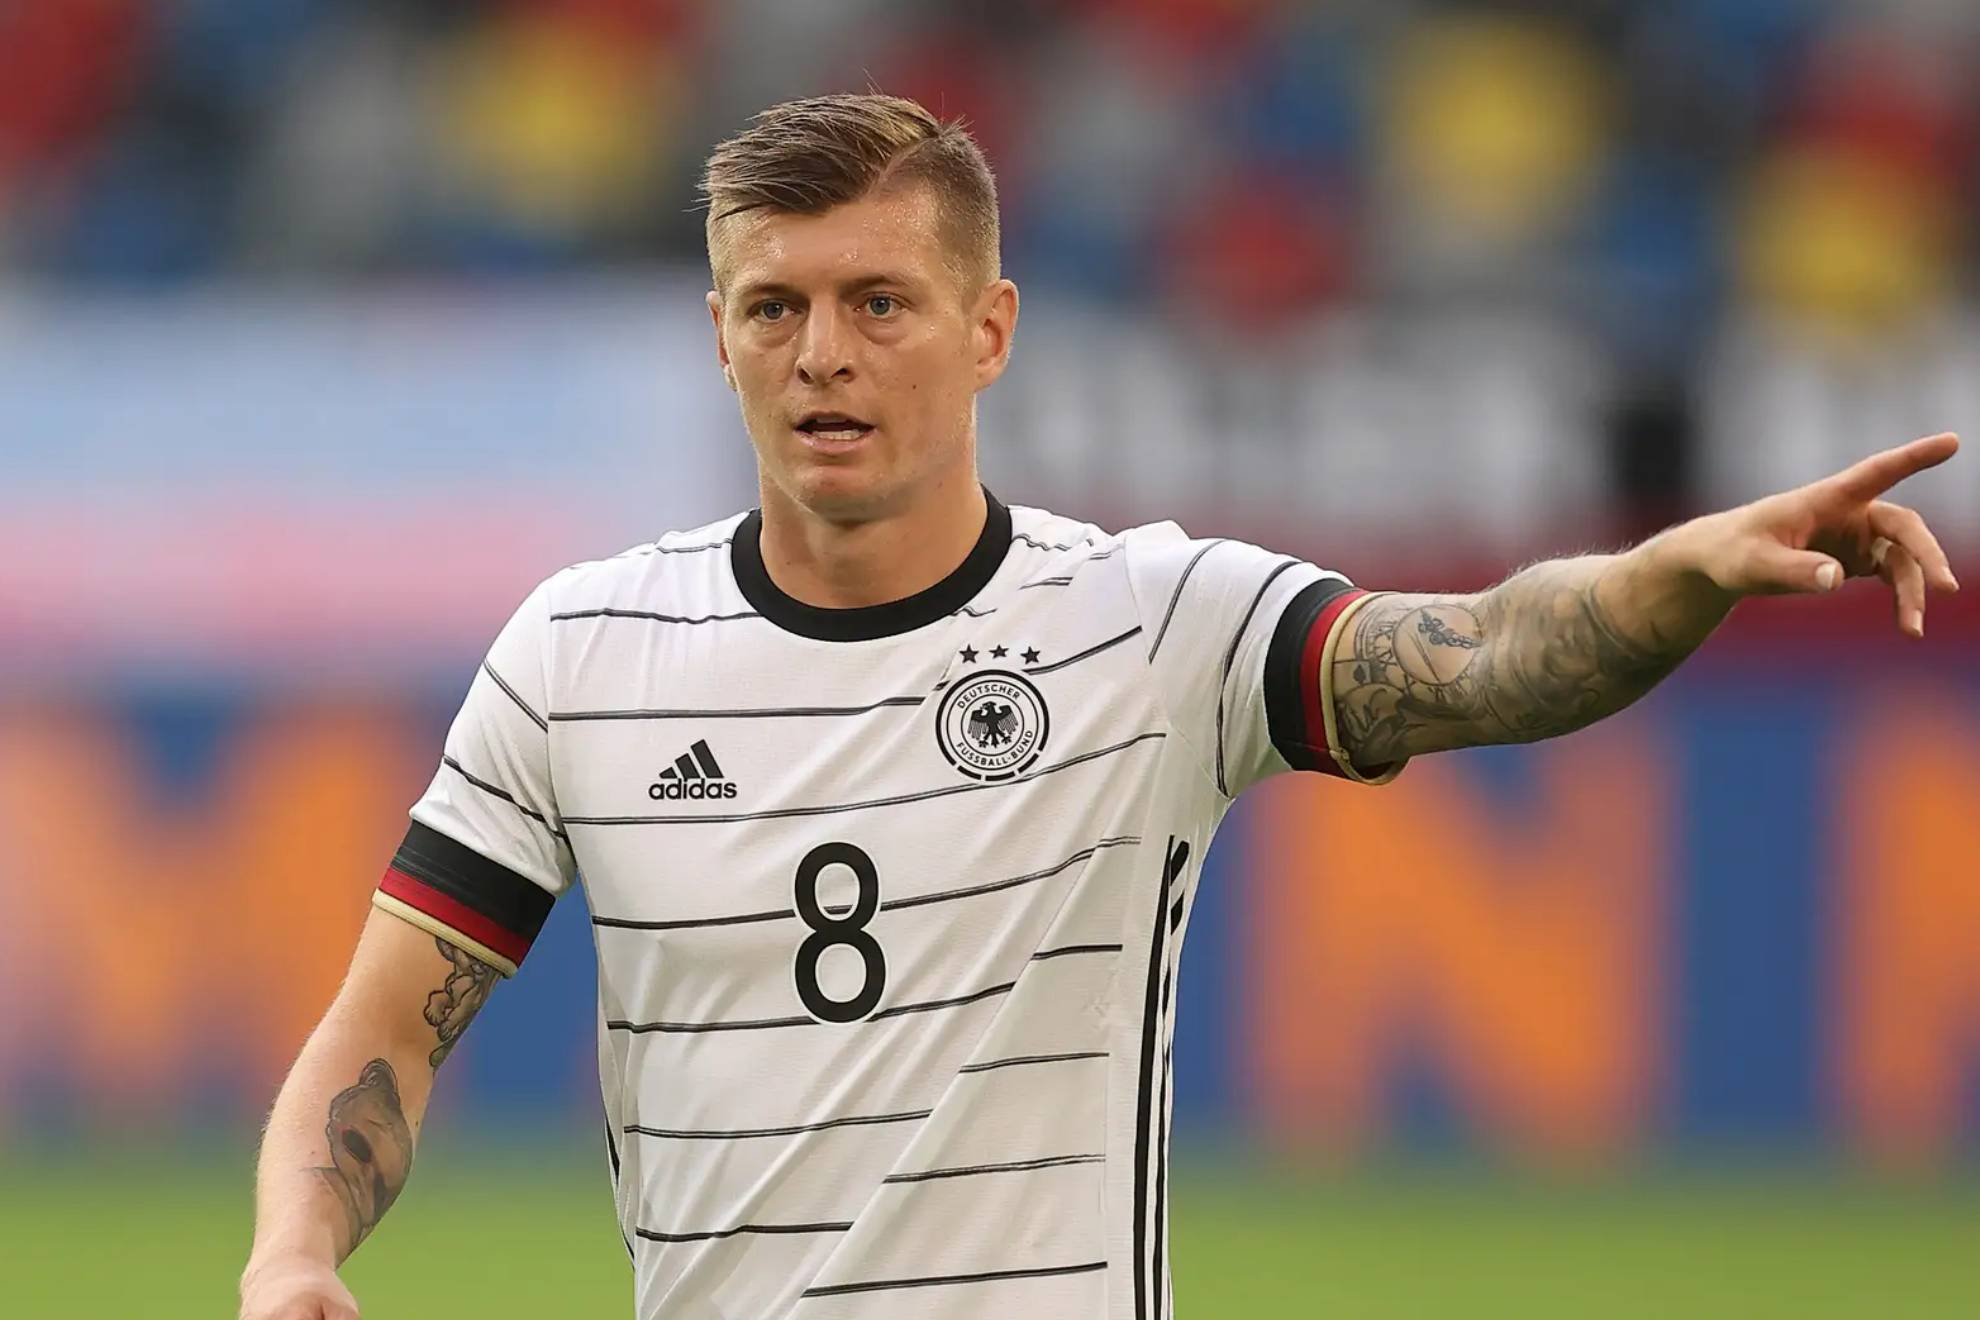 El Corrillo: ¿Vuelve Kroos a la selección alemana para retirarse del fútbol tras disputar la eurocopa en su país?